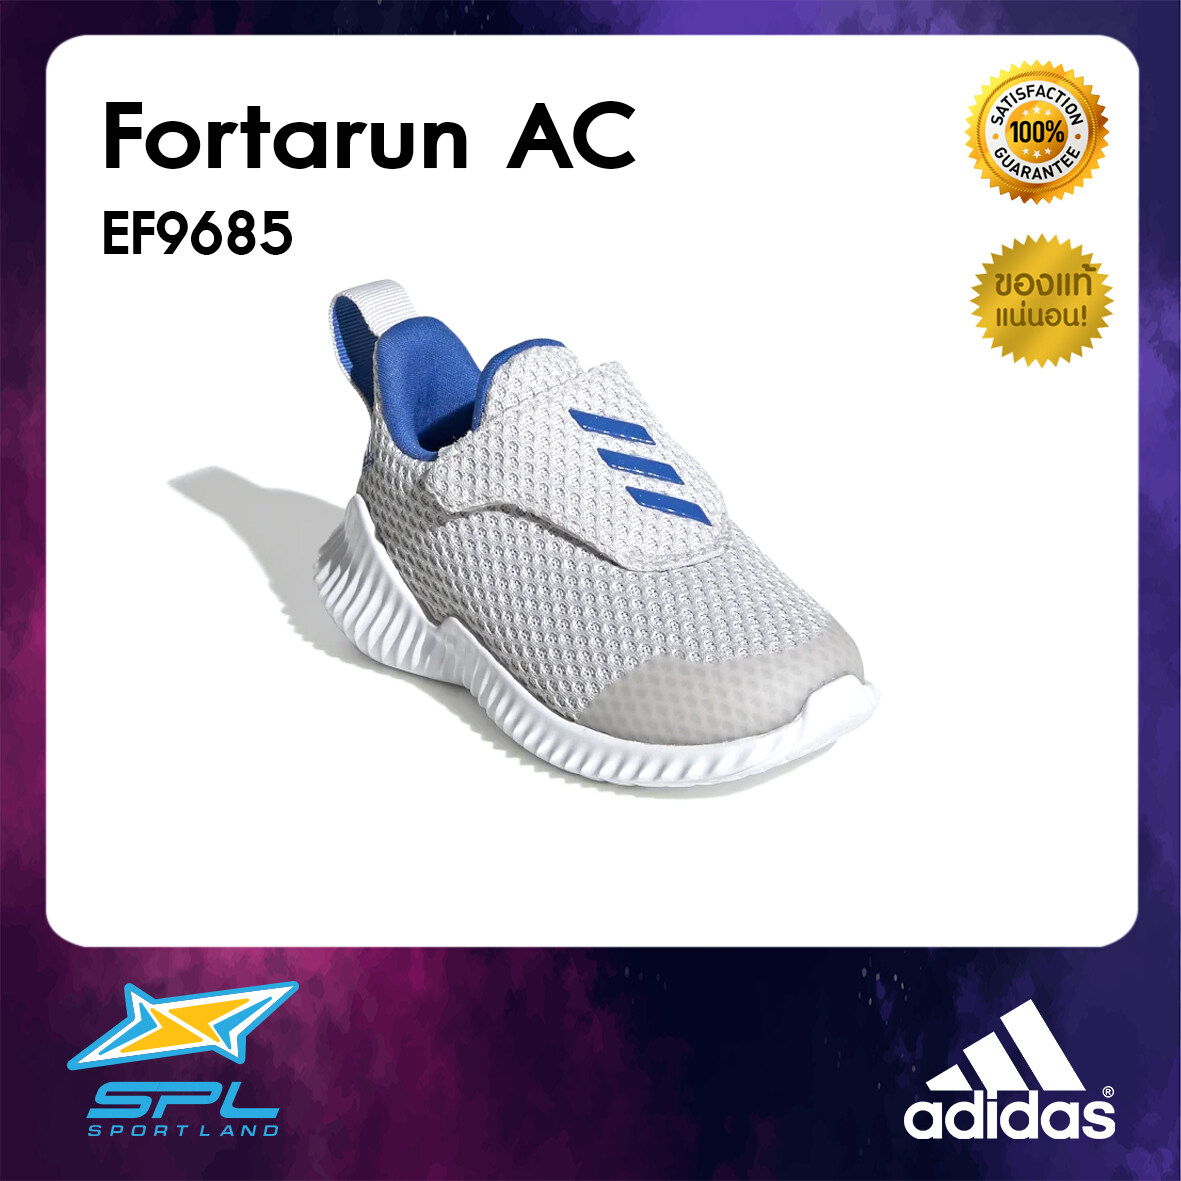 Adidas รองเท้าวิ่งเด็ก รองเท้าแฟชั่น รองเท้ากีฬา รองเท้าผ้าใบ รองเท้าเด็ก อาดิดาส Running Infants Shoe Fortarun Ac Ef9685 (1200). 